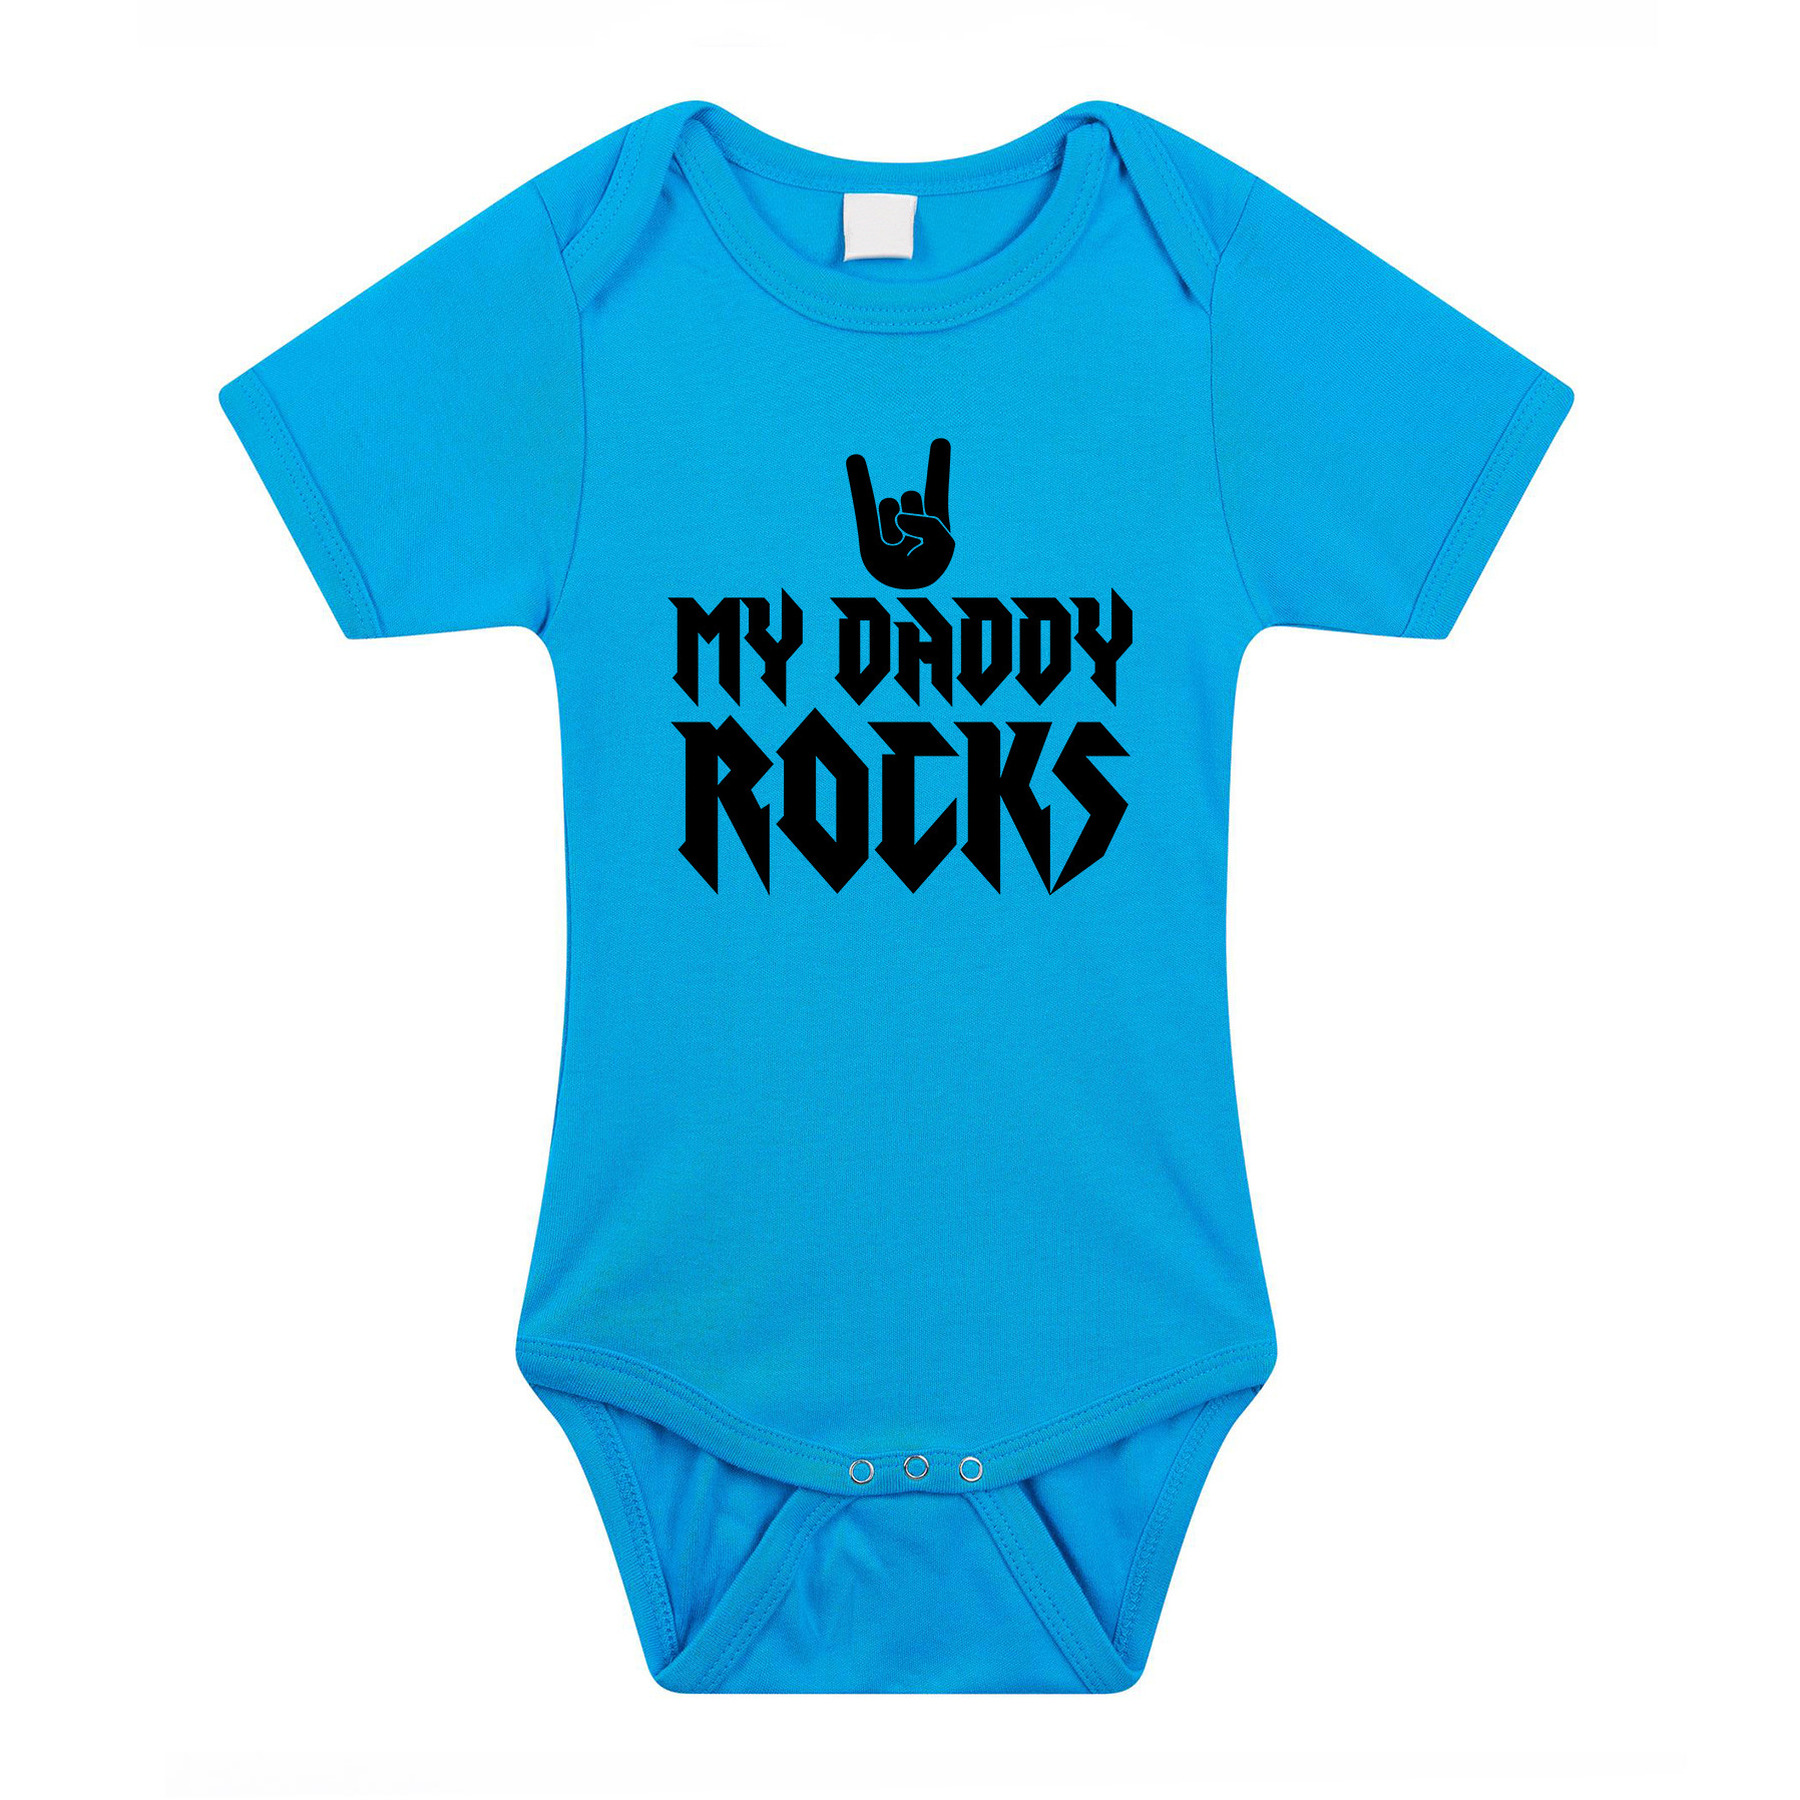 Daddy rocks cadeau baby rompertje blauw jongens